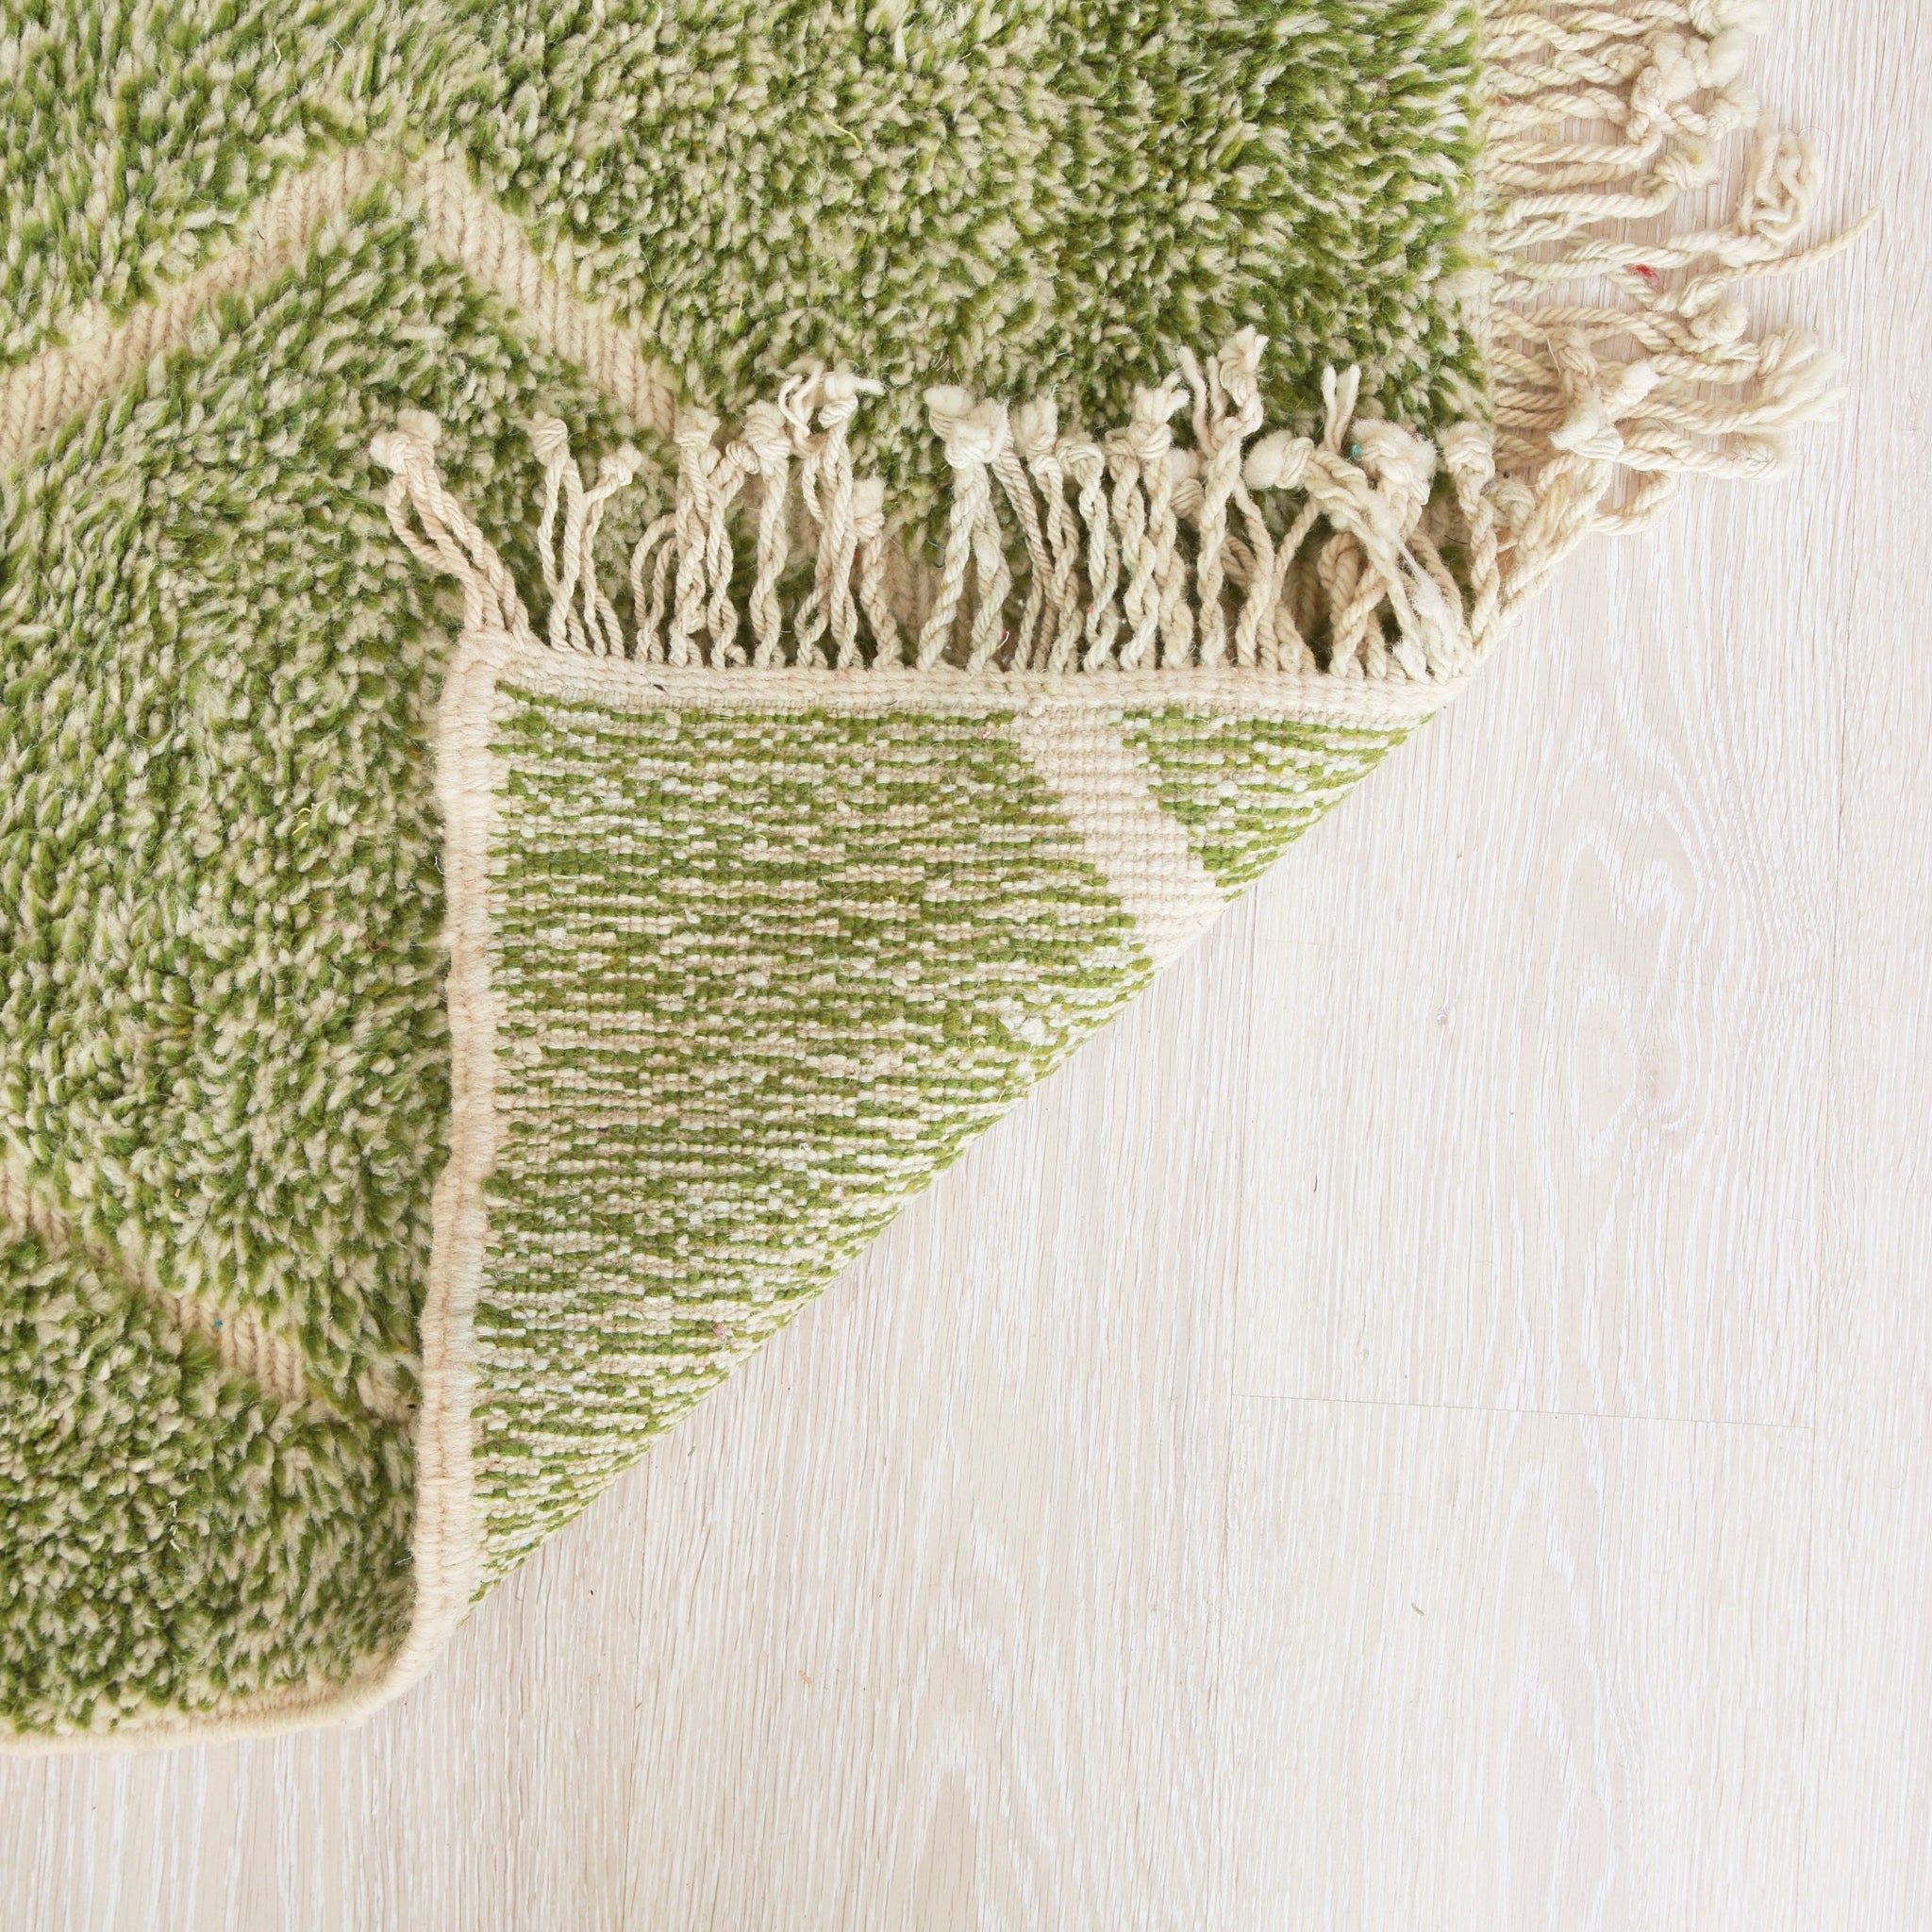 retro di un tappeto beni mrirt che l'alternanza di nodi verdi e bianchi nonché i nodi in tessuto chiaro che creano le linee visibili sul tappeto